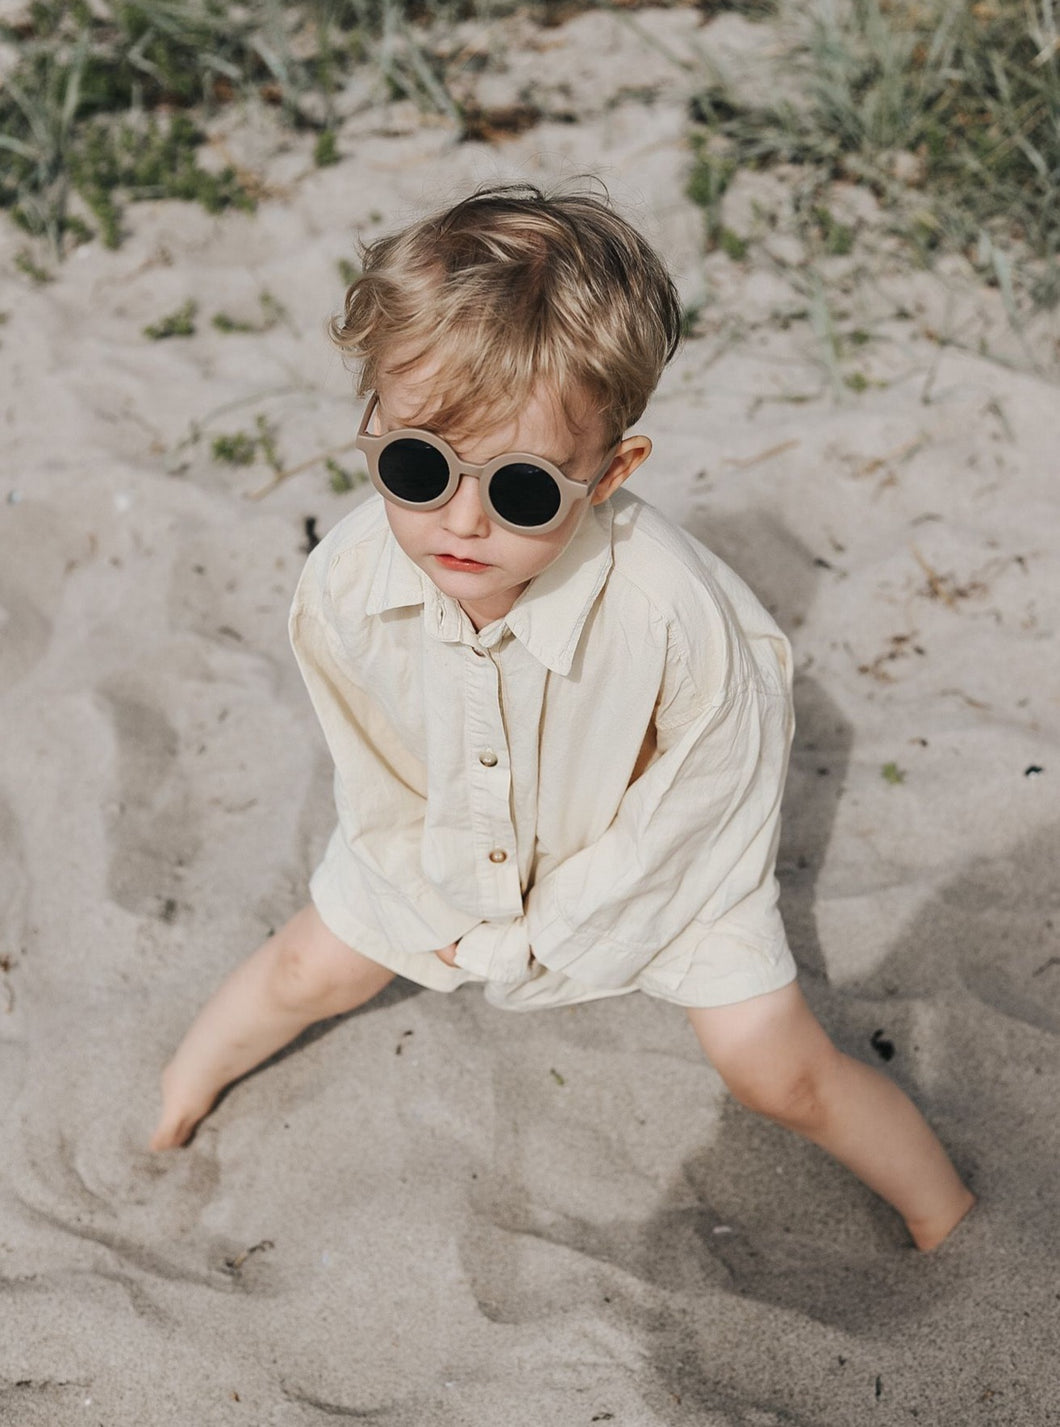 Sustainable Kids Sunglasses